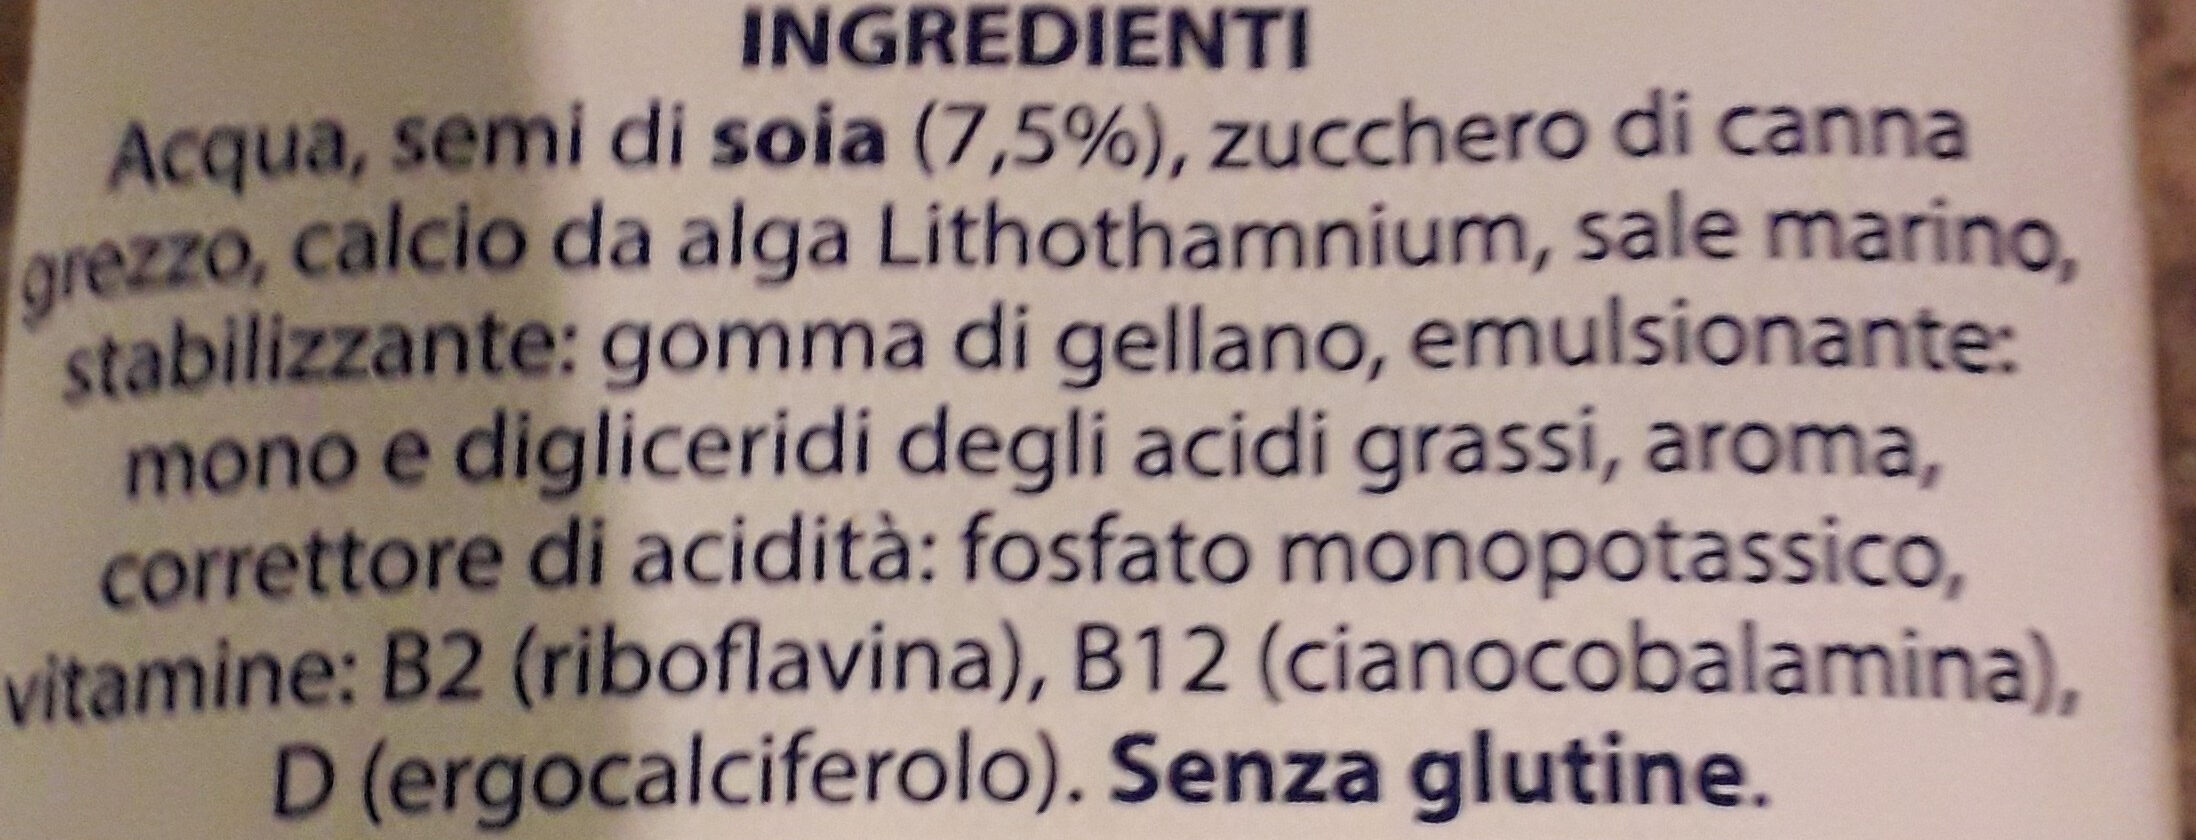 Le bevande vegetali Soia - Ingredientes - it